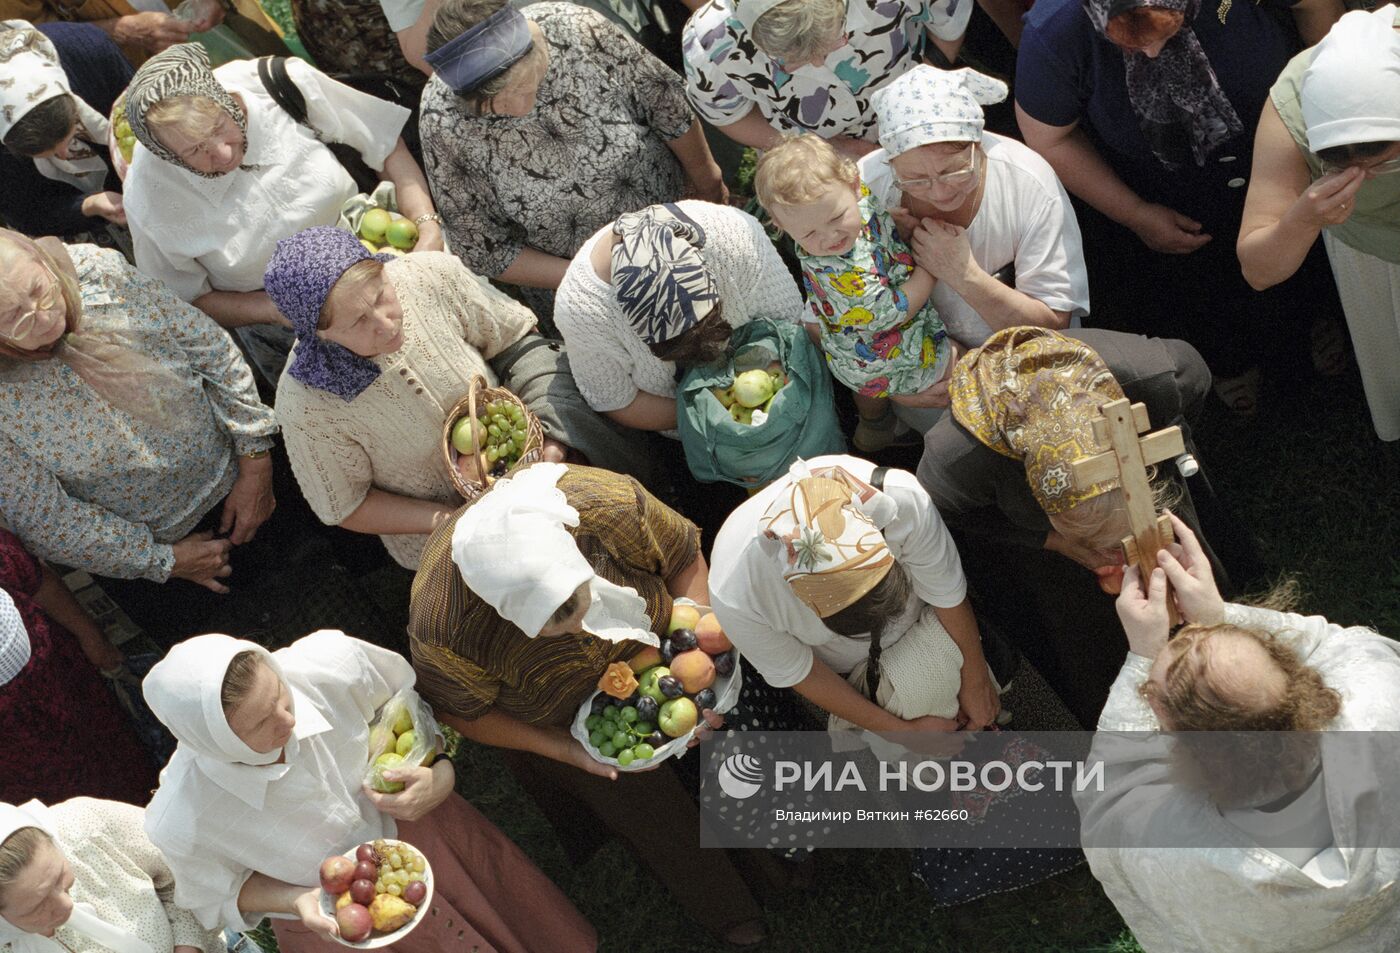 Освещение плодов в праздник "Спасовки в Коломенском"